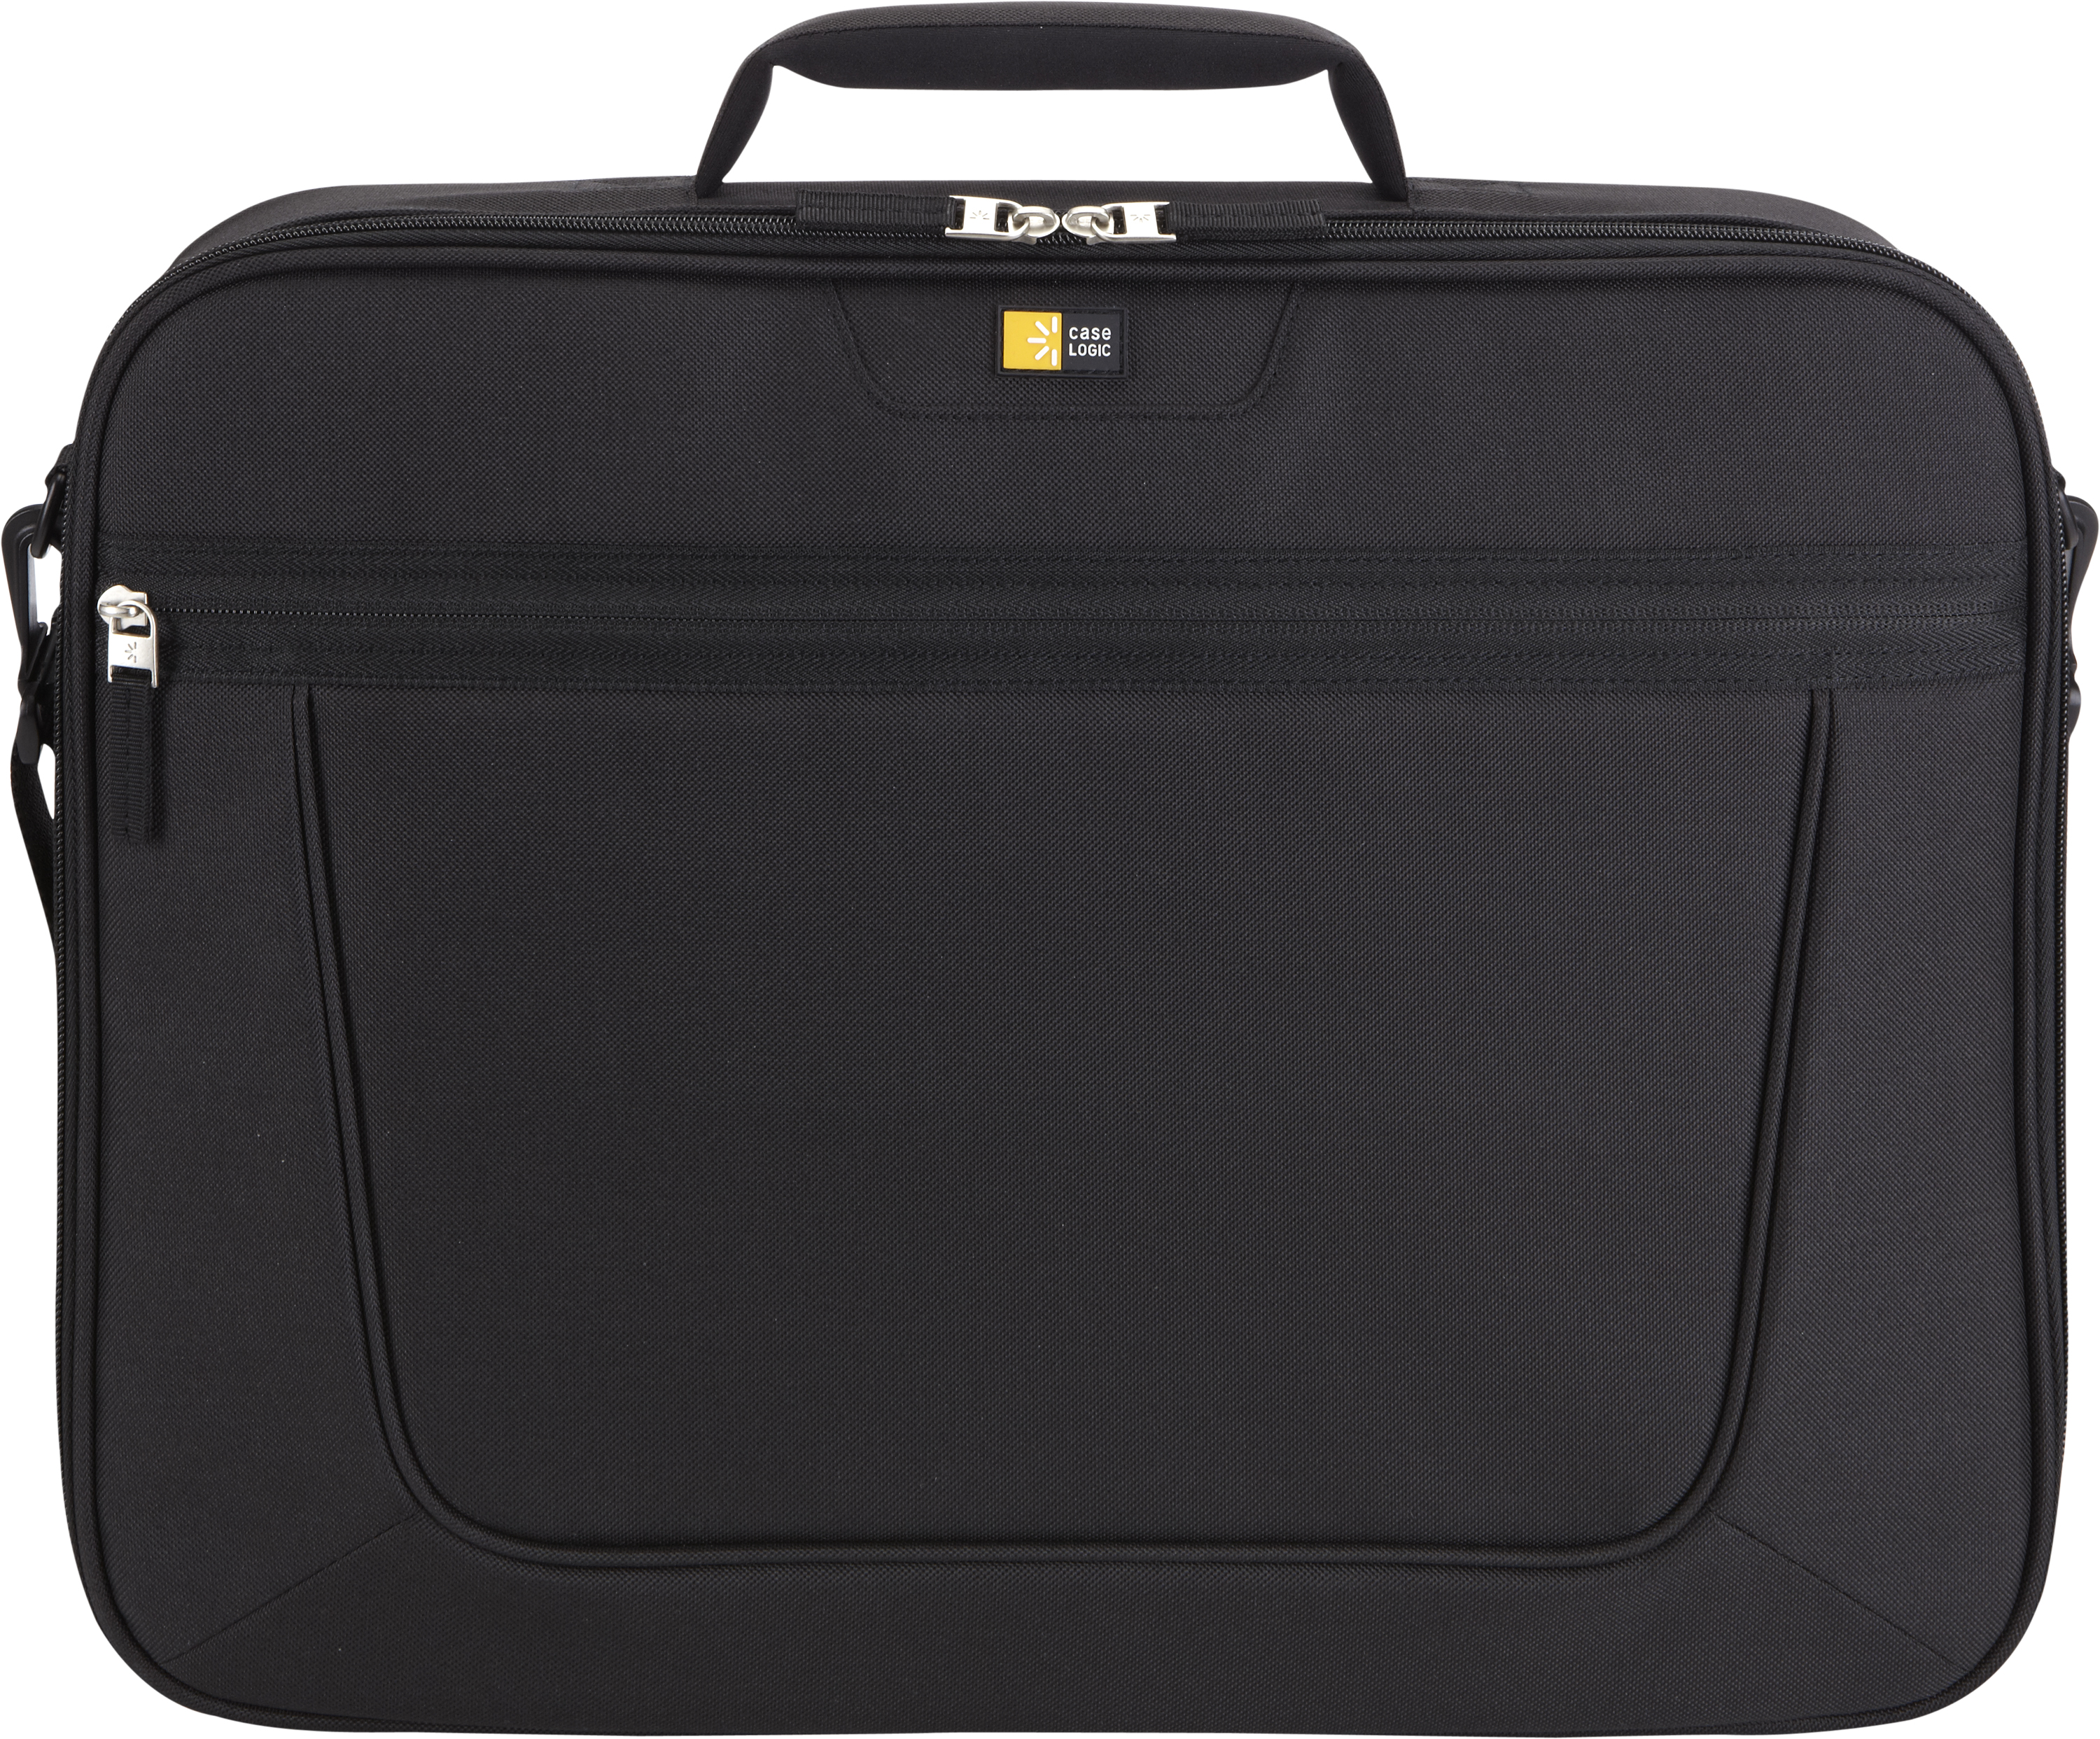 Case Logic Value Laptop Bag 15.6 VNCI-215 BLACK (3201491)